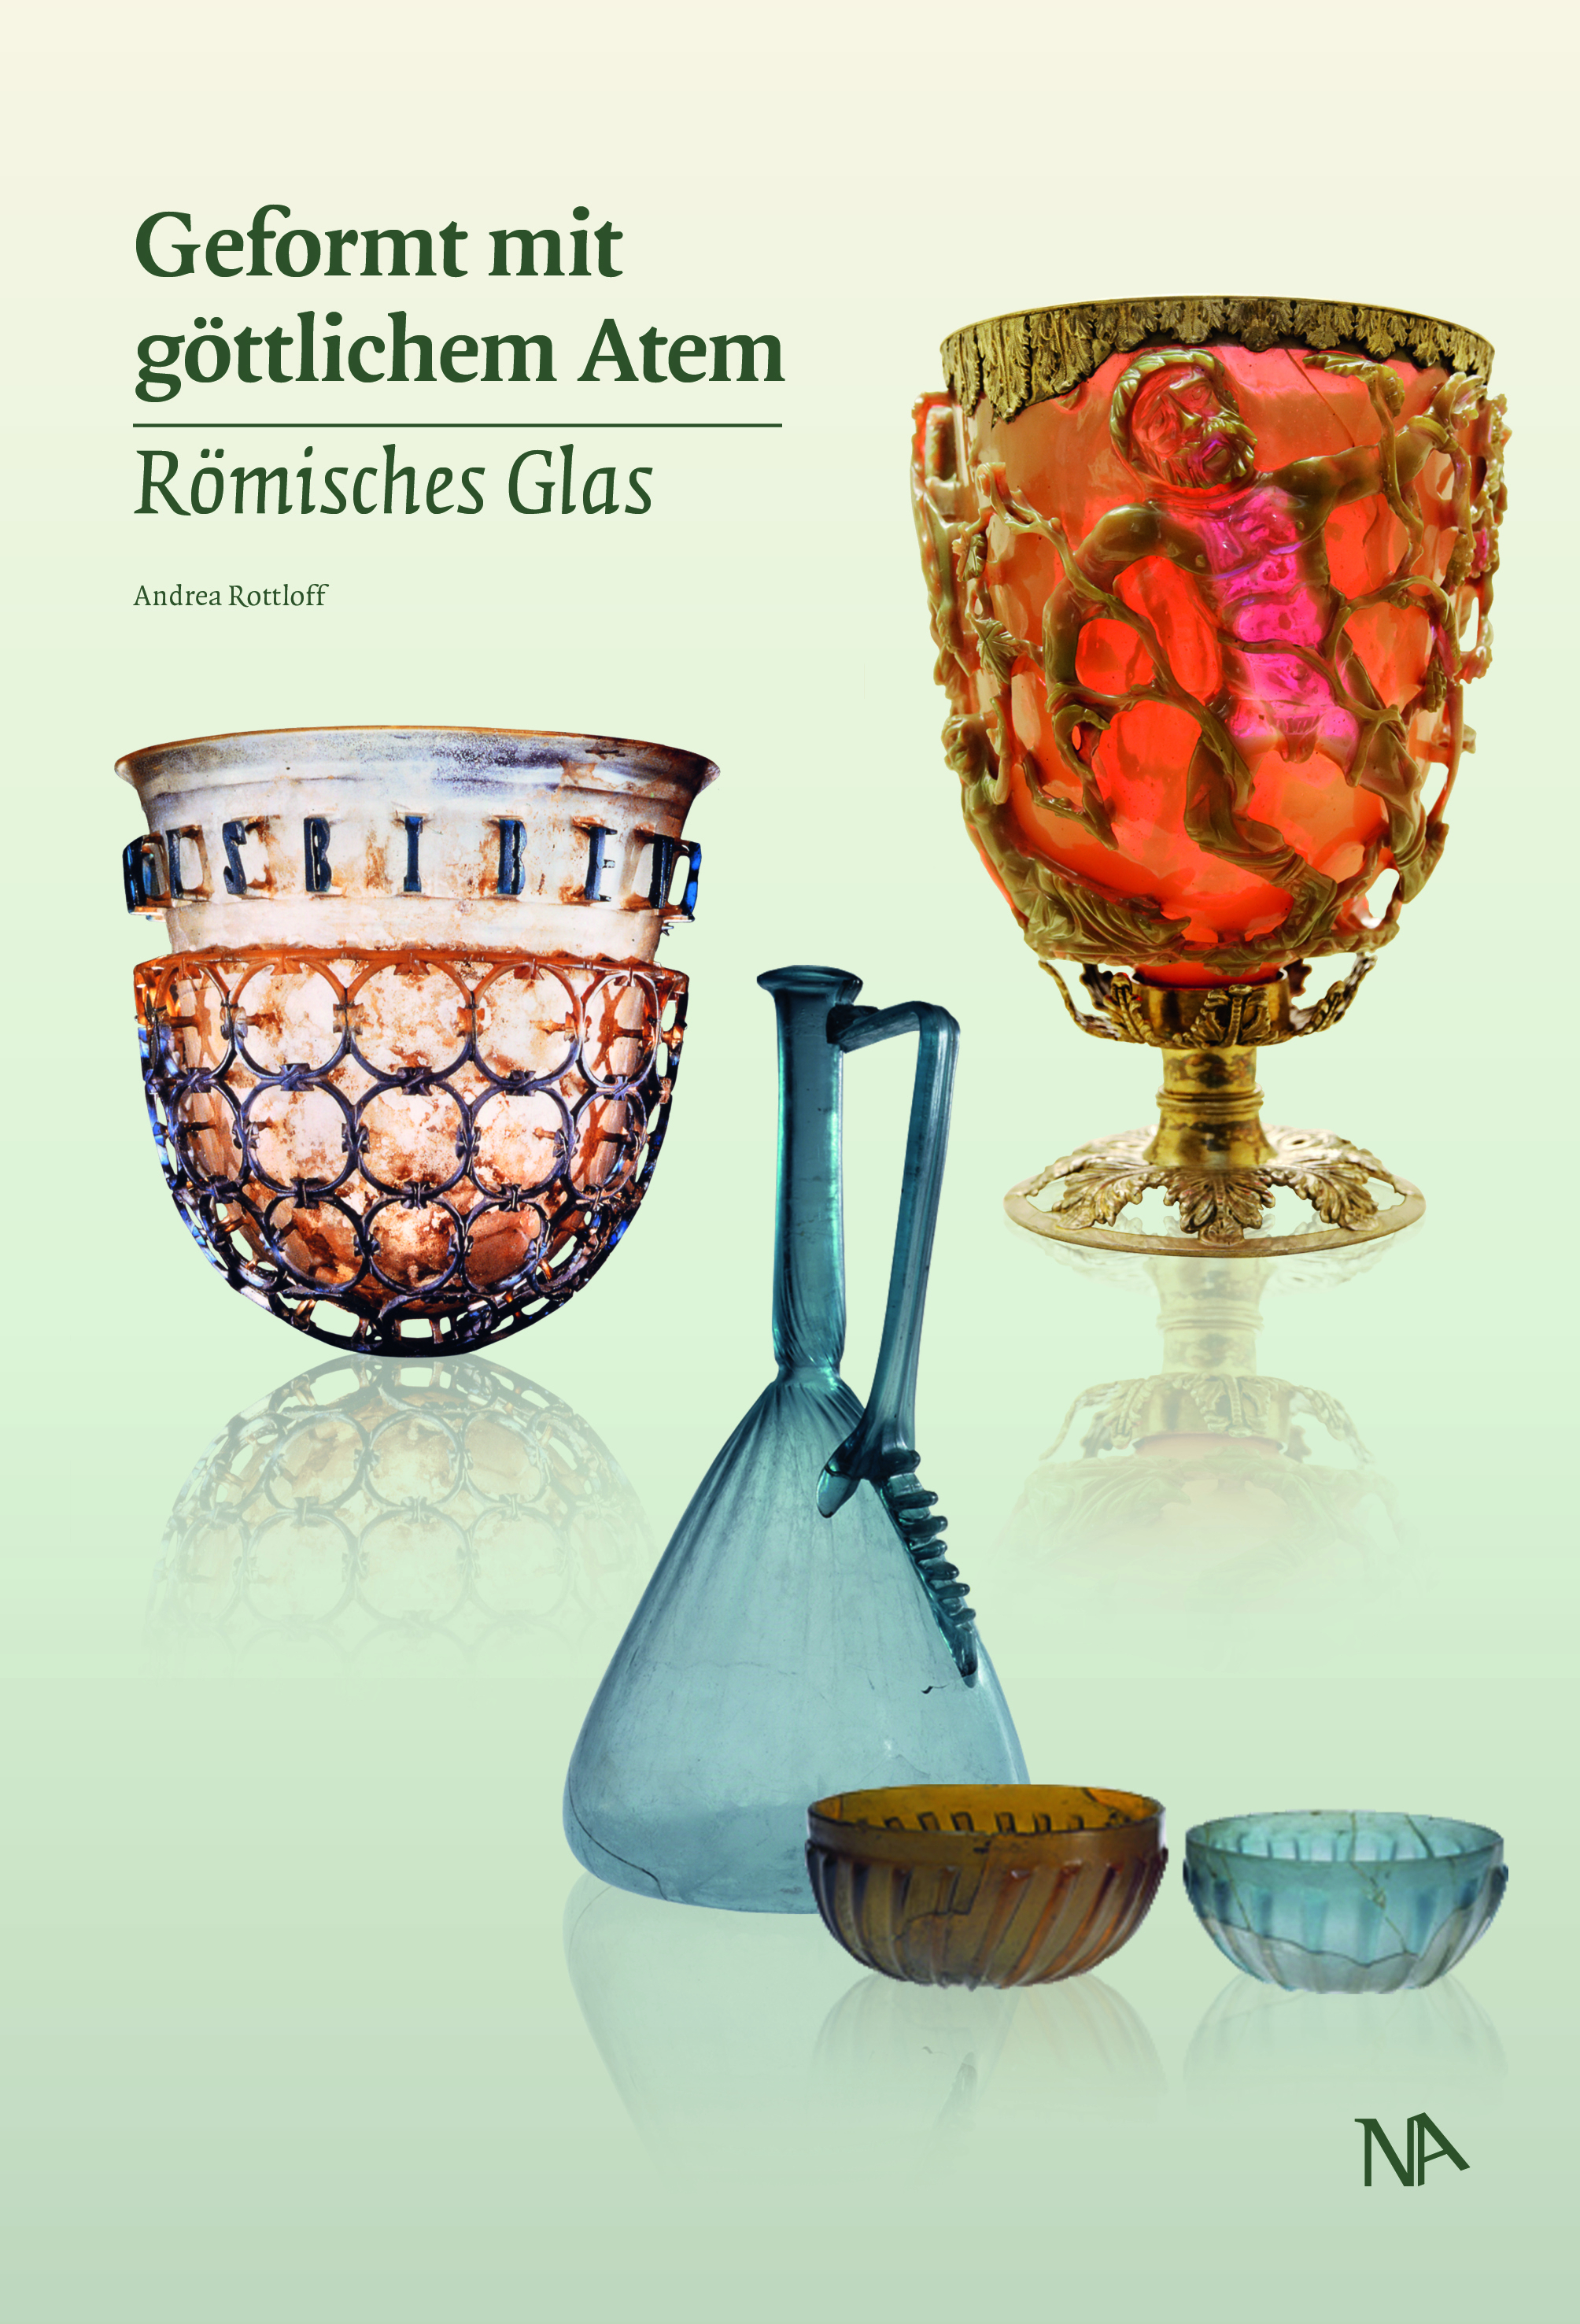  Römisches Glas: Geformt mit göttlichem Atem